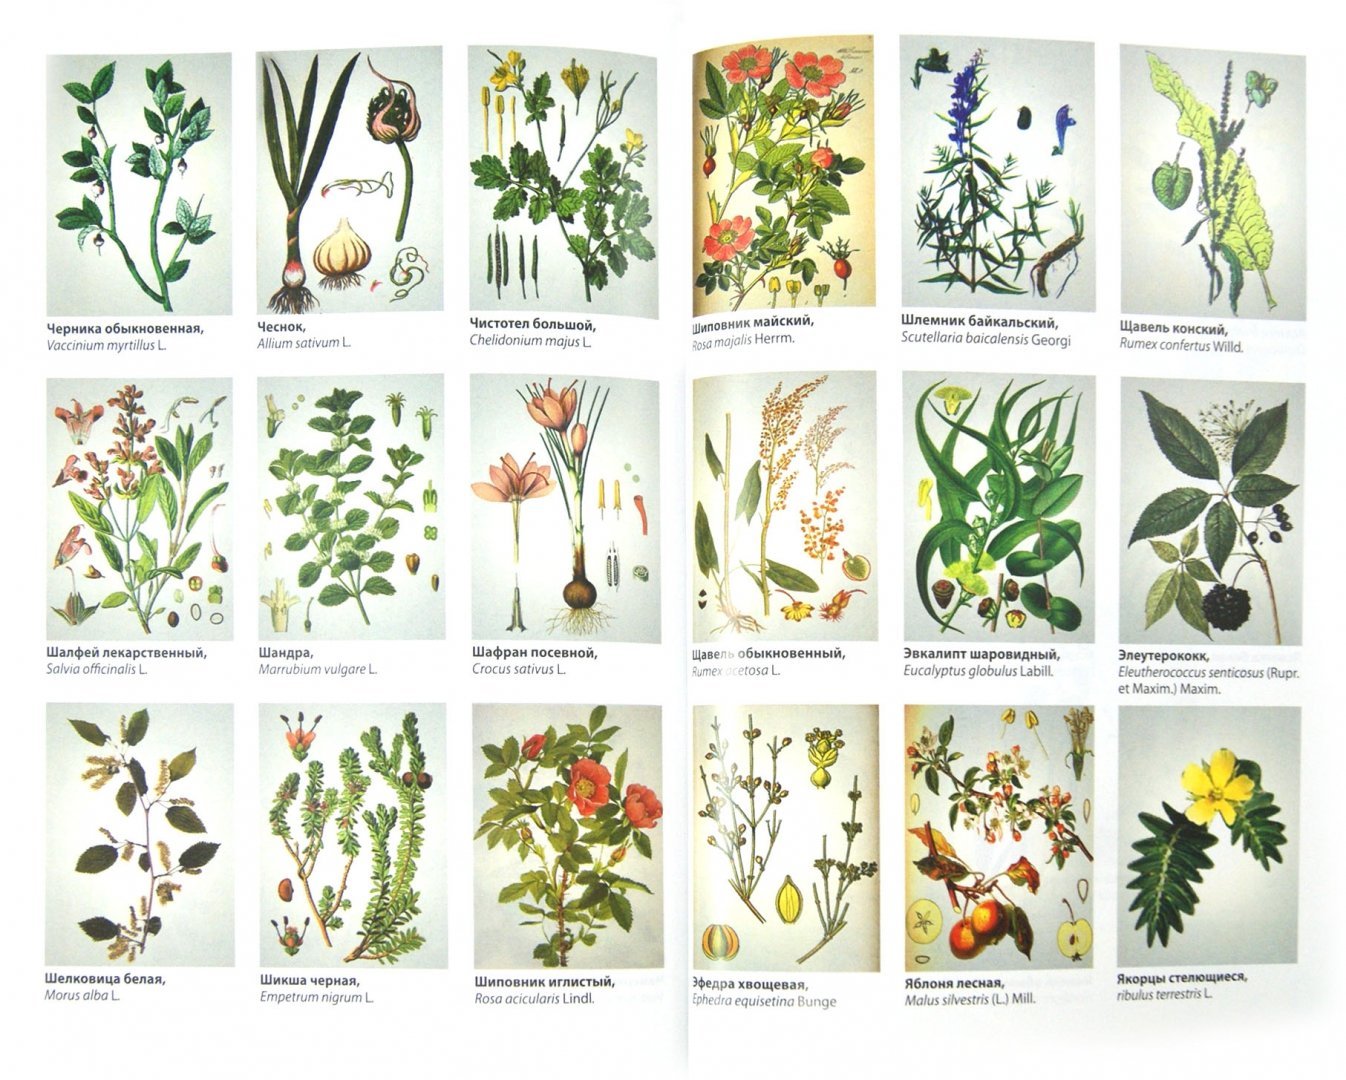 Полные названия растений. Лекарственные растения. Лекарственные растения названия. Лекарственные растения рисунки. Лекарственные травы с названиями.